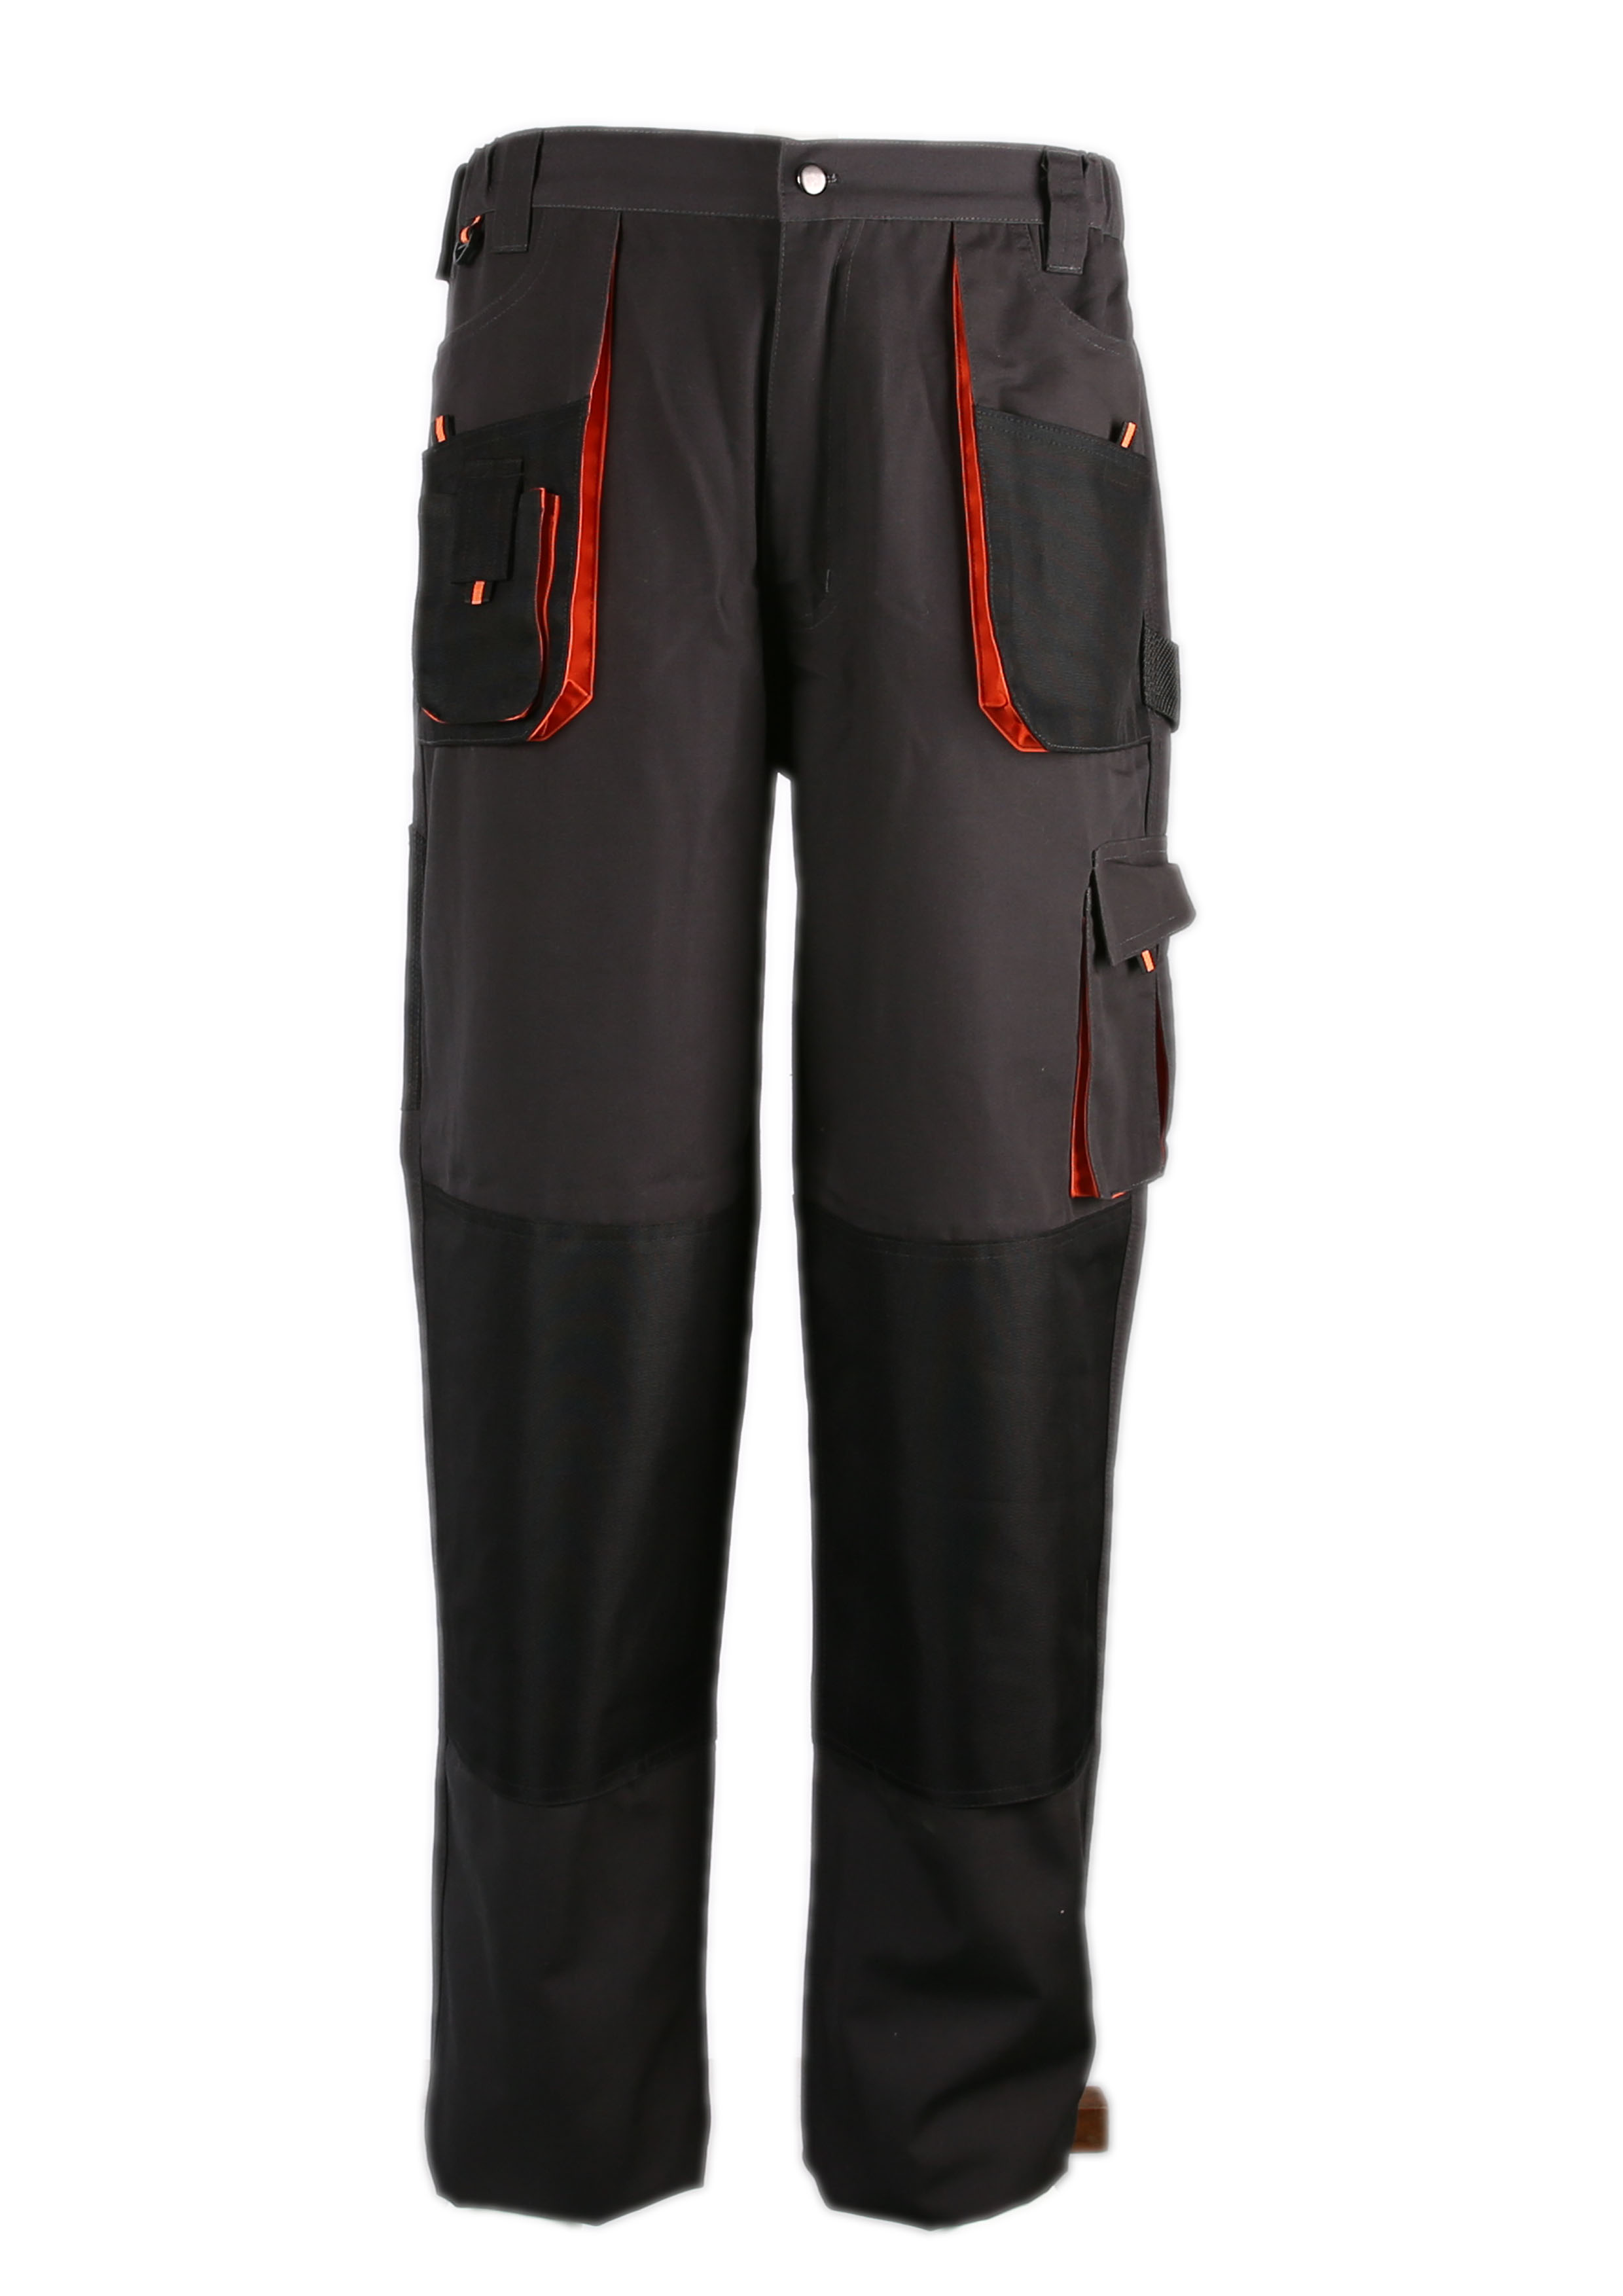 Мужские рабочие брюки Caro Durable T / C с карманами для наколенников